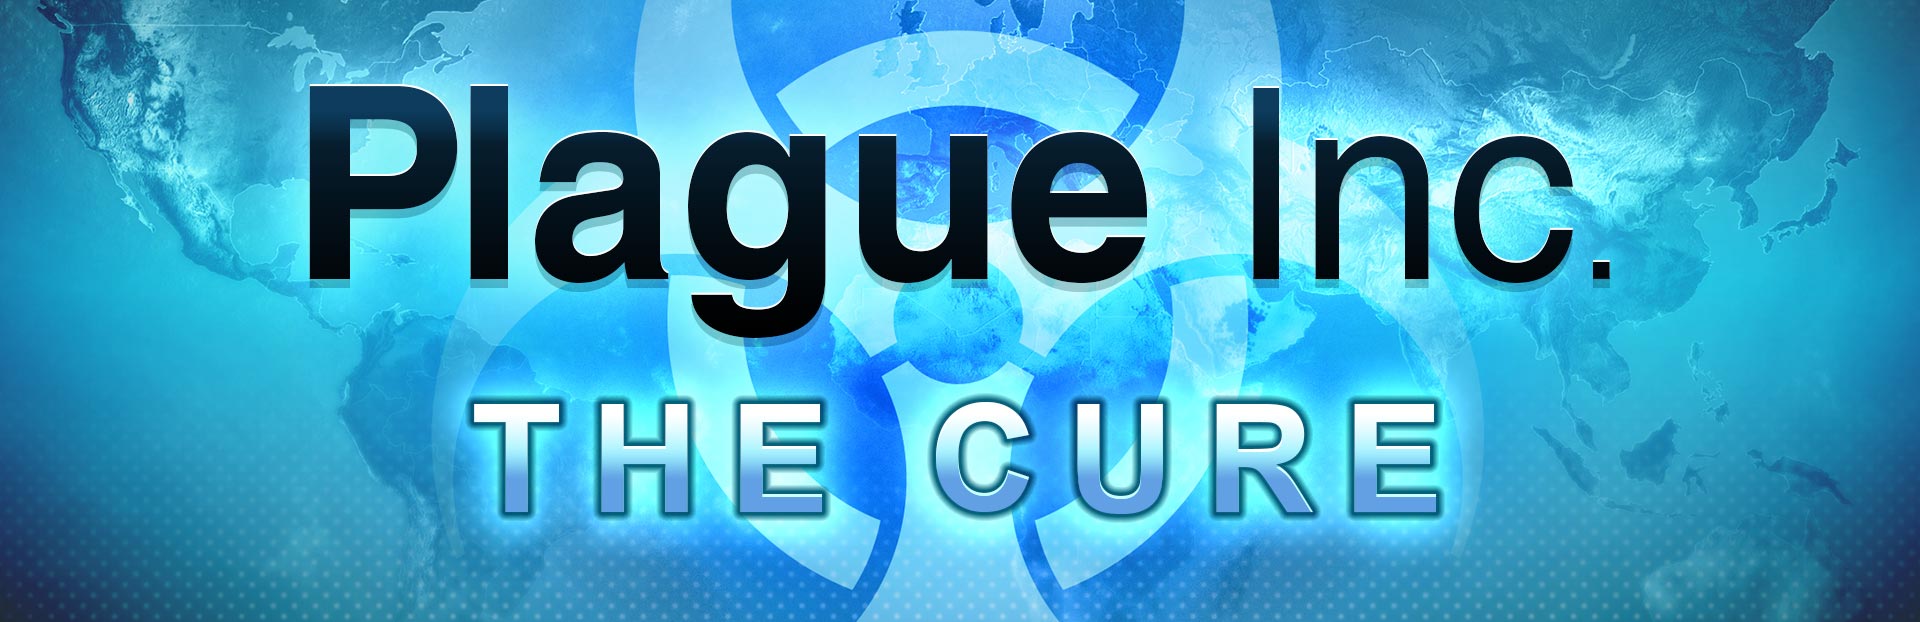 Plague Inc The Cure